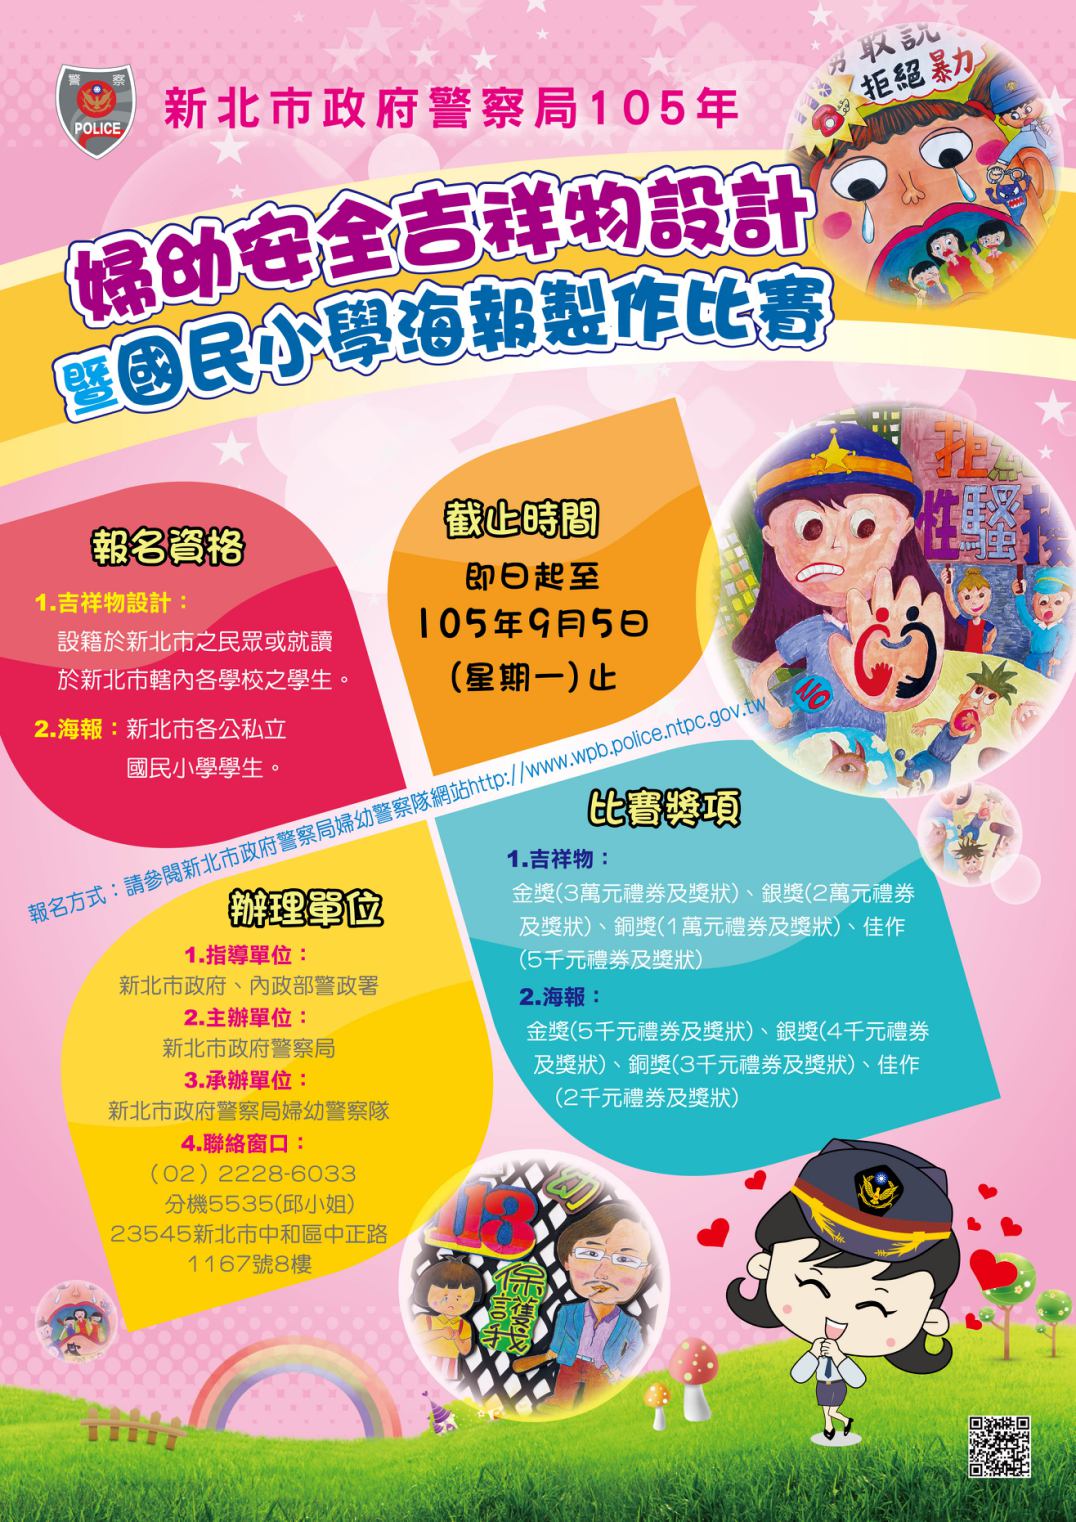 105年「婦幼安全」吉祥物設計暨國民小學海報製作比賽辦法